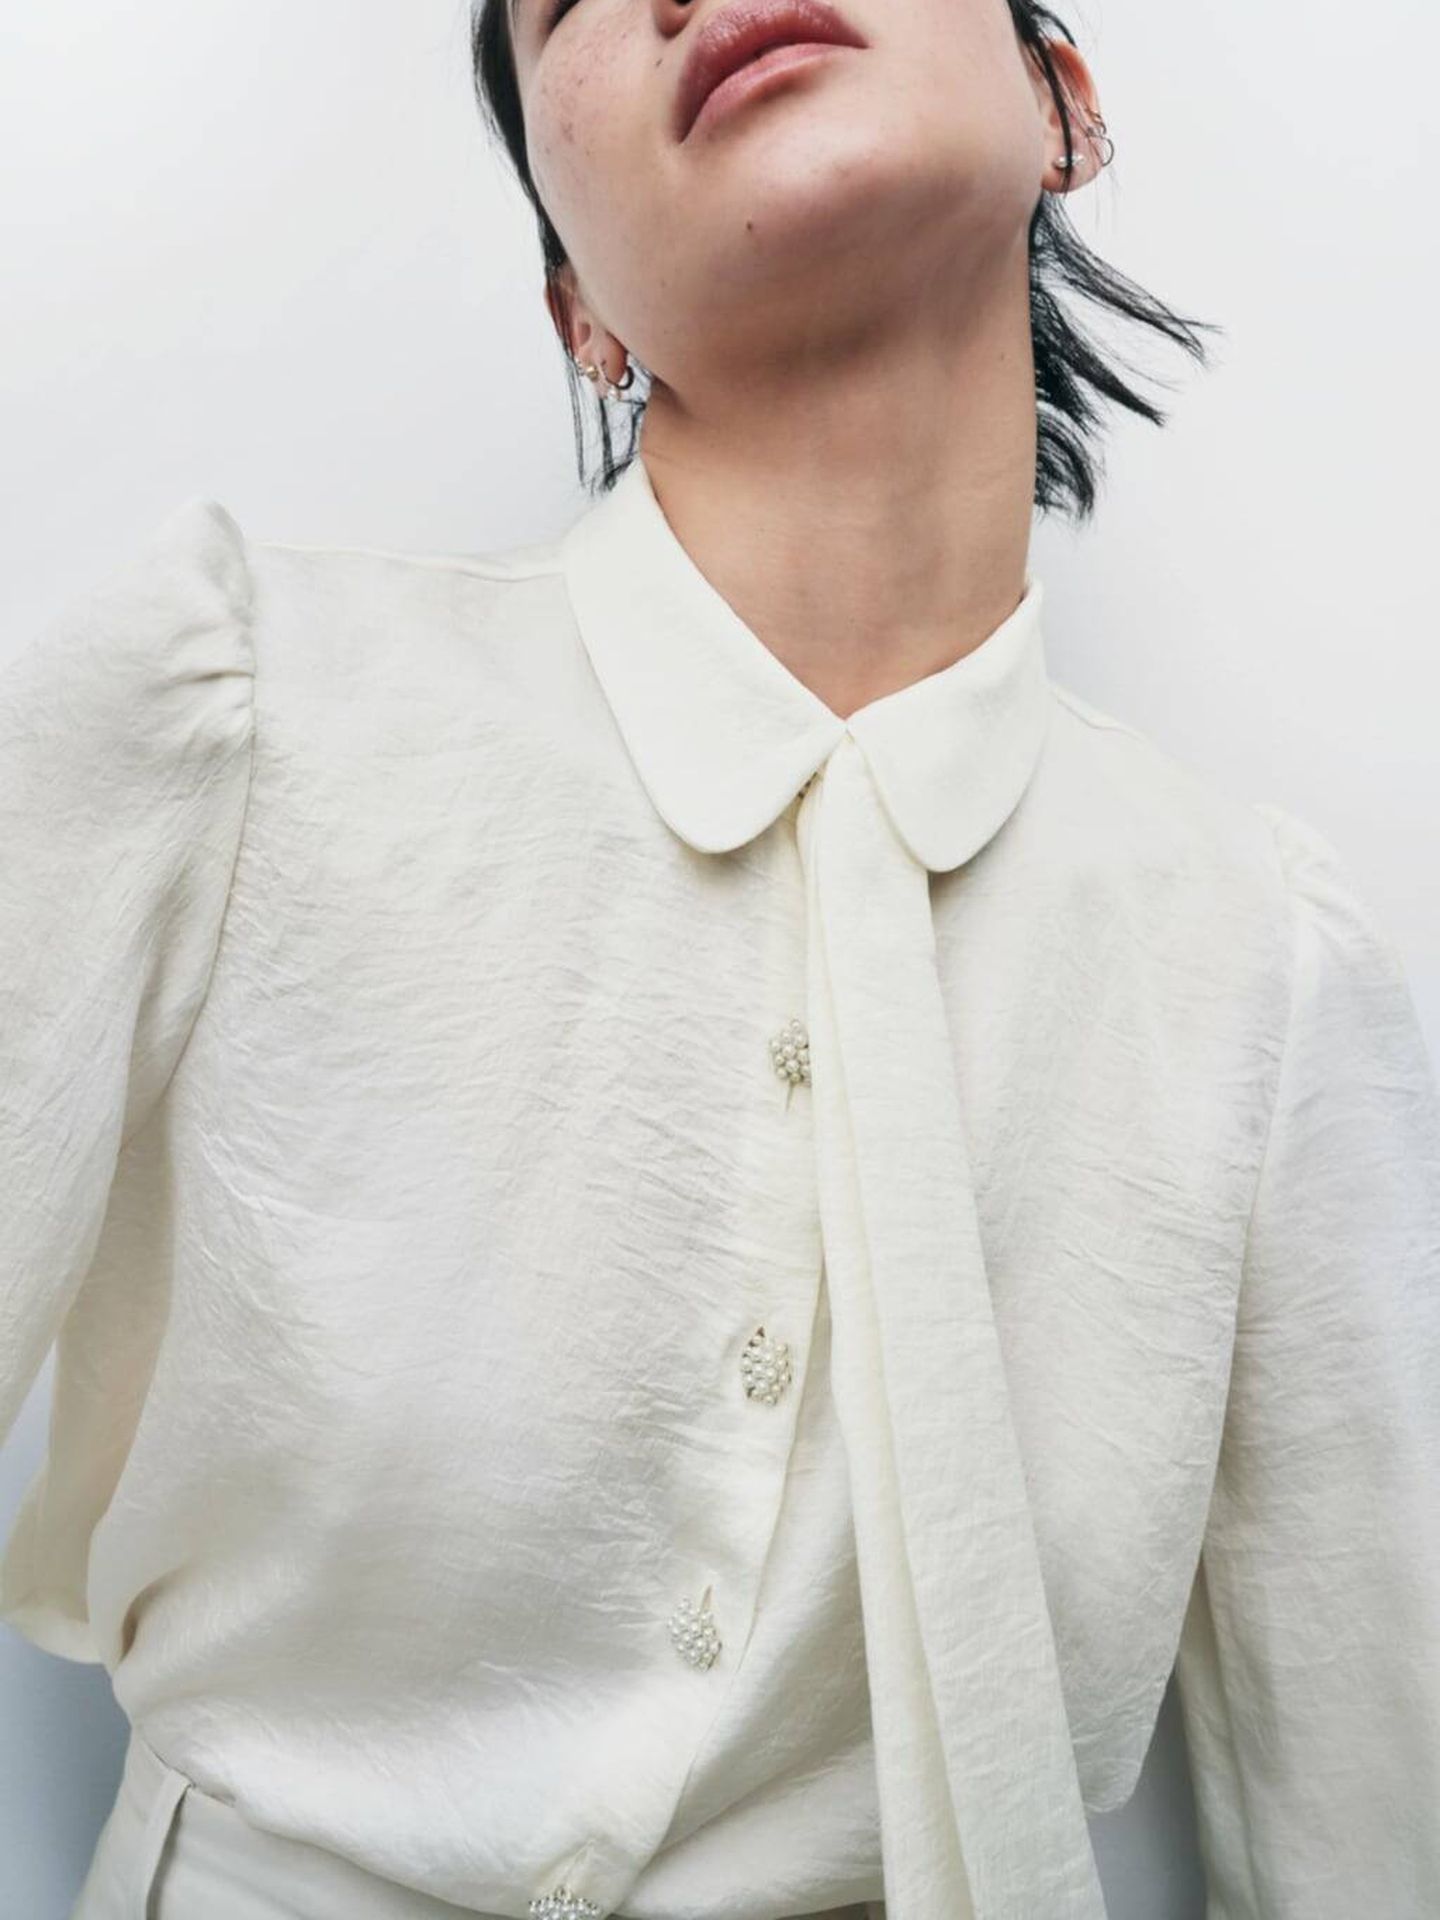 referir cadena Nos vemos mañana Esta camisa blanca de Zara es la joya que transforma todos tus looks